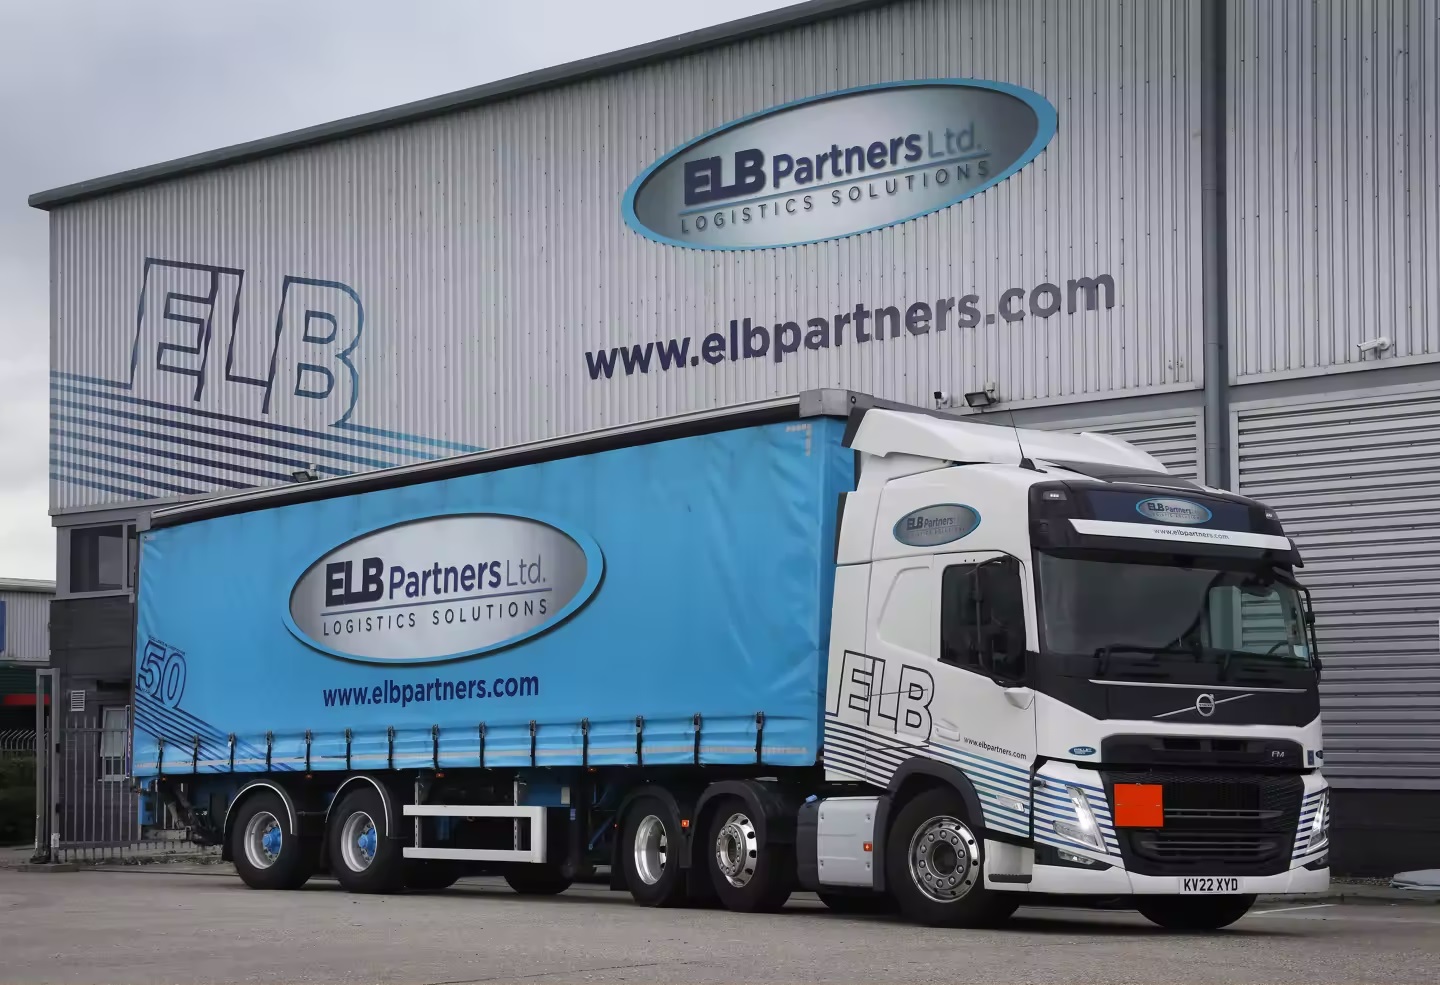 An ELB Partners truck